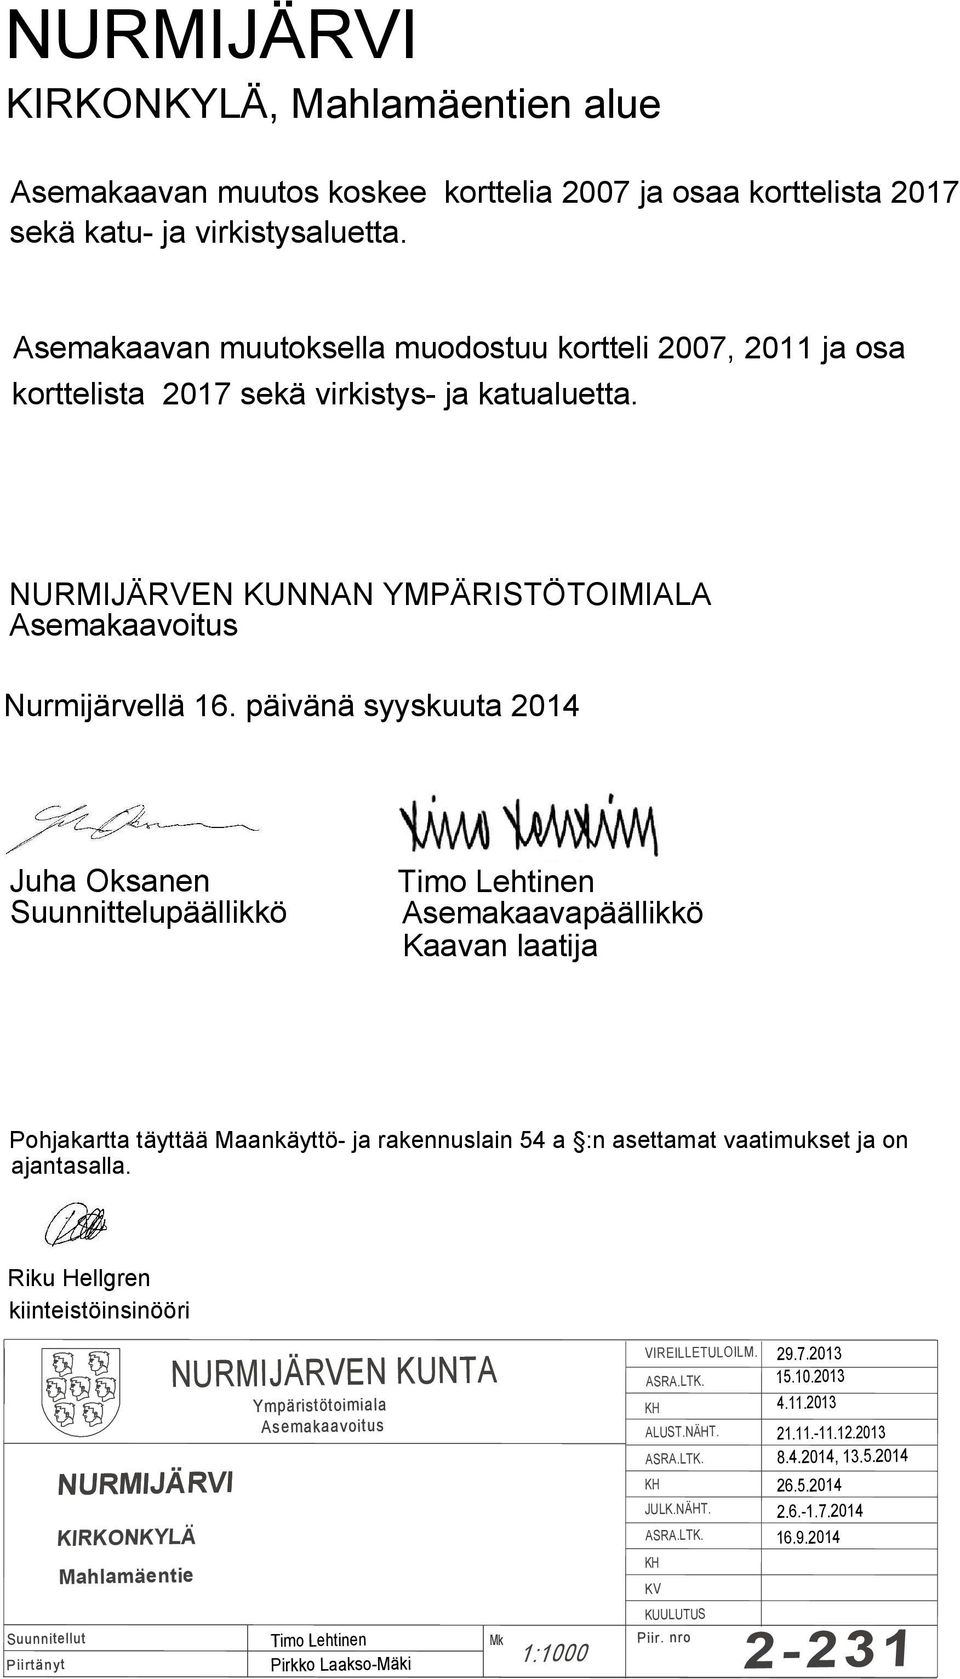 Asemakaavapäällikkö Kaavan laatija Pohjakartta täyttää Maankäyttö- ja rakennuslain 54 a :n asettamat vaatimukset ja on ajantasalla Riku Hellgren kiinteistöinsinööri Suunnitellut Piirtänyt NURMIJÄRVI